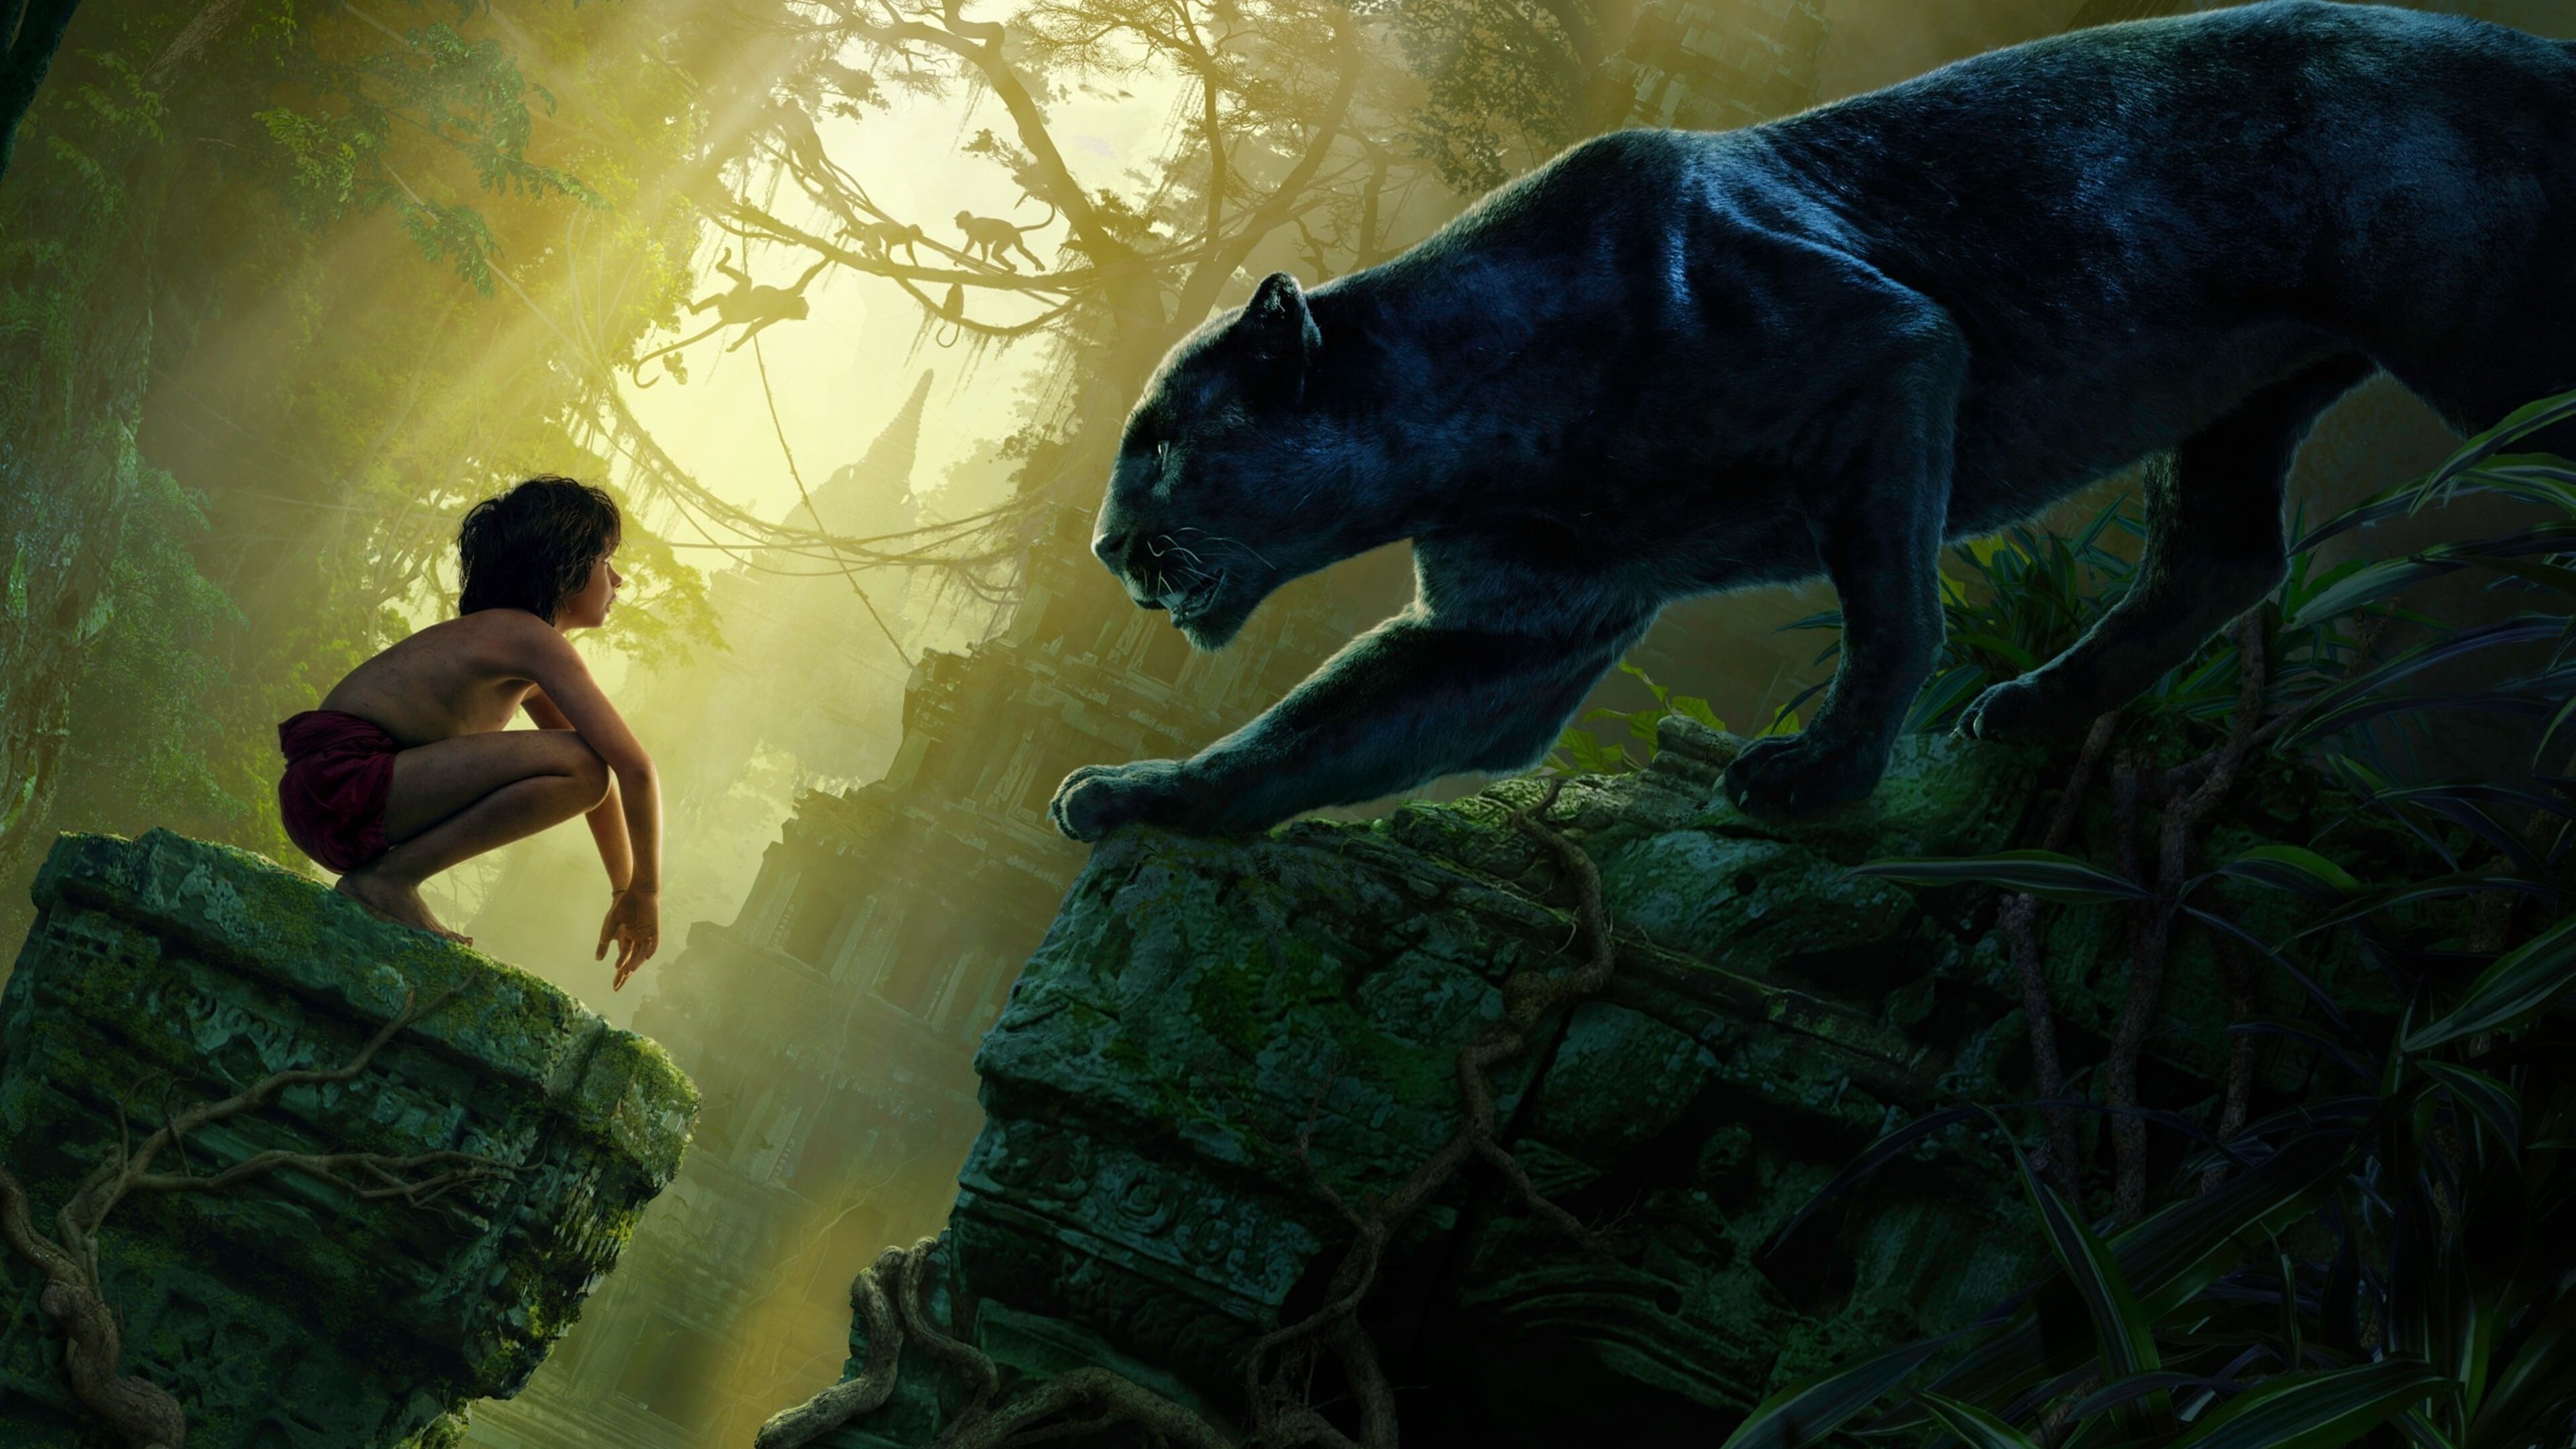 หนังสือป่า The Jungle Book ออนไลน์โดยสมบูรณ์ในปี 2016